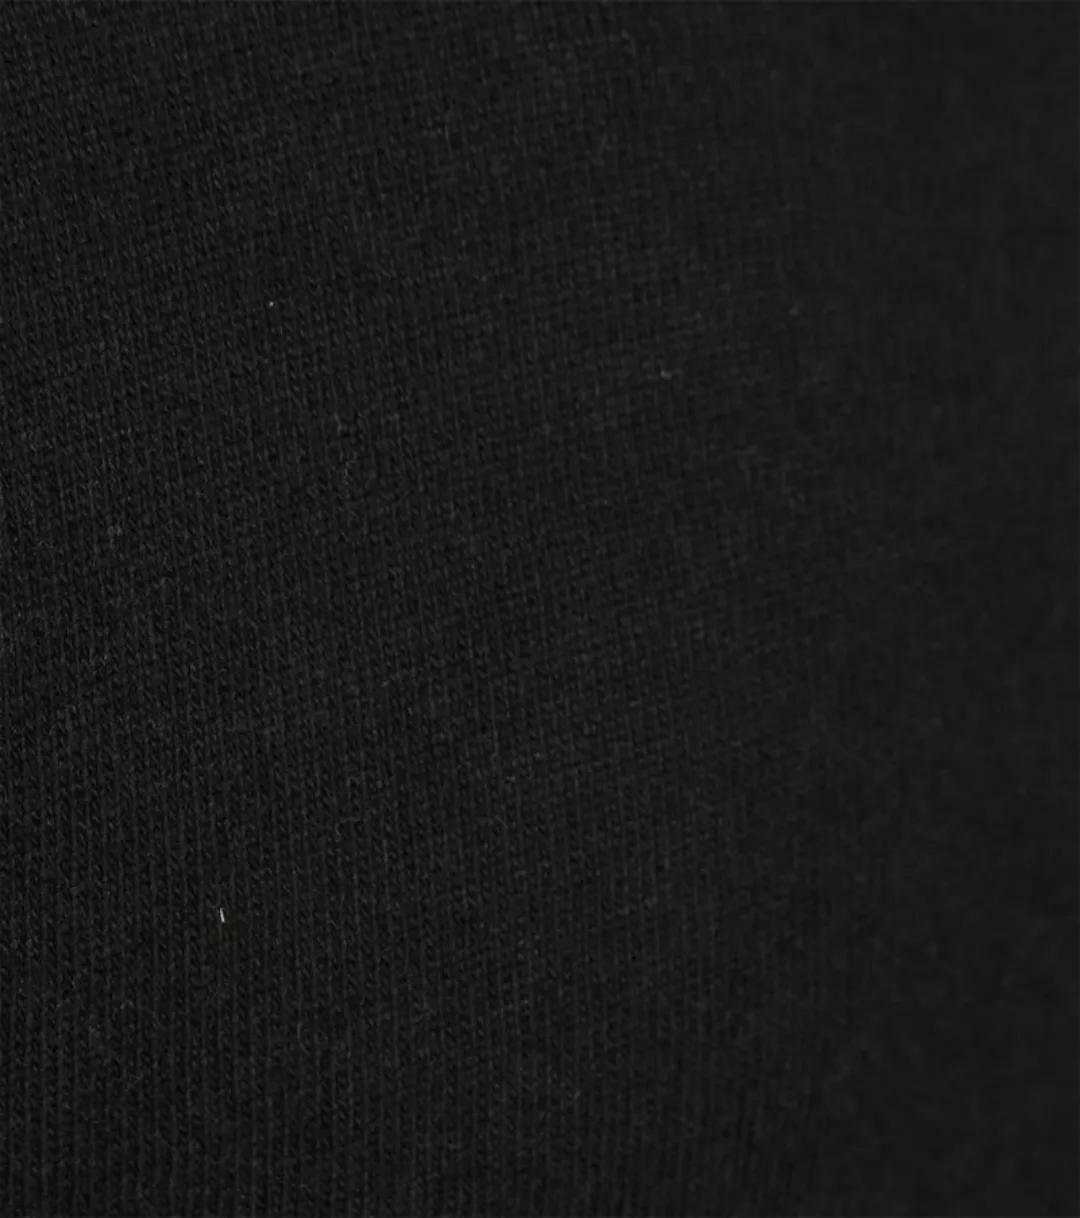 Bunter Standard Pullover Merino Schwarz - Größe S günstig online kaufen